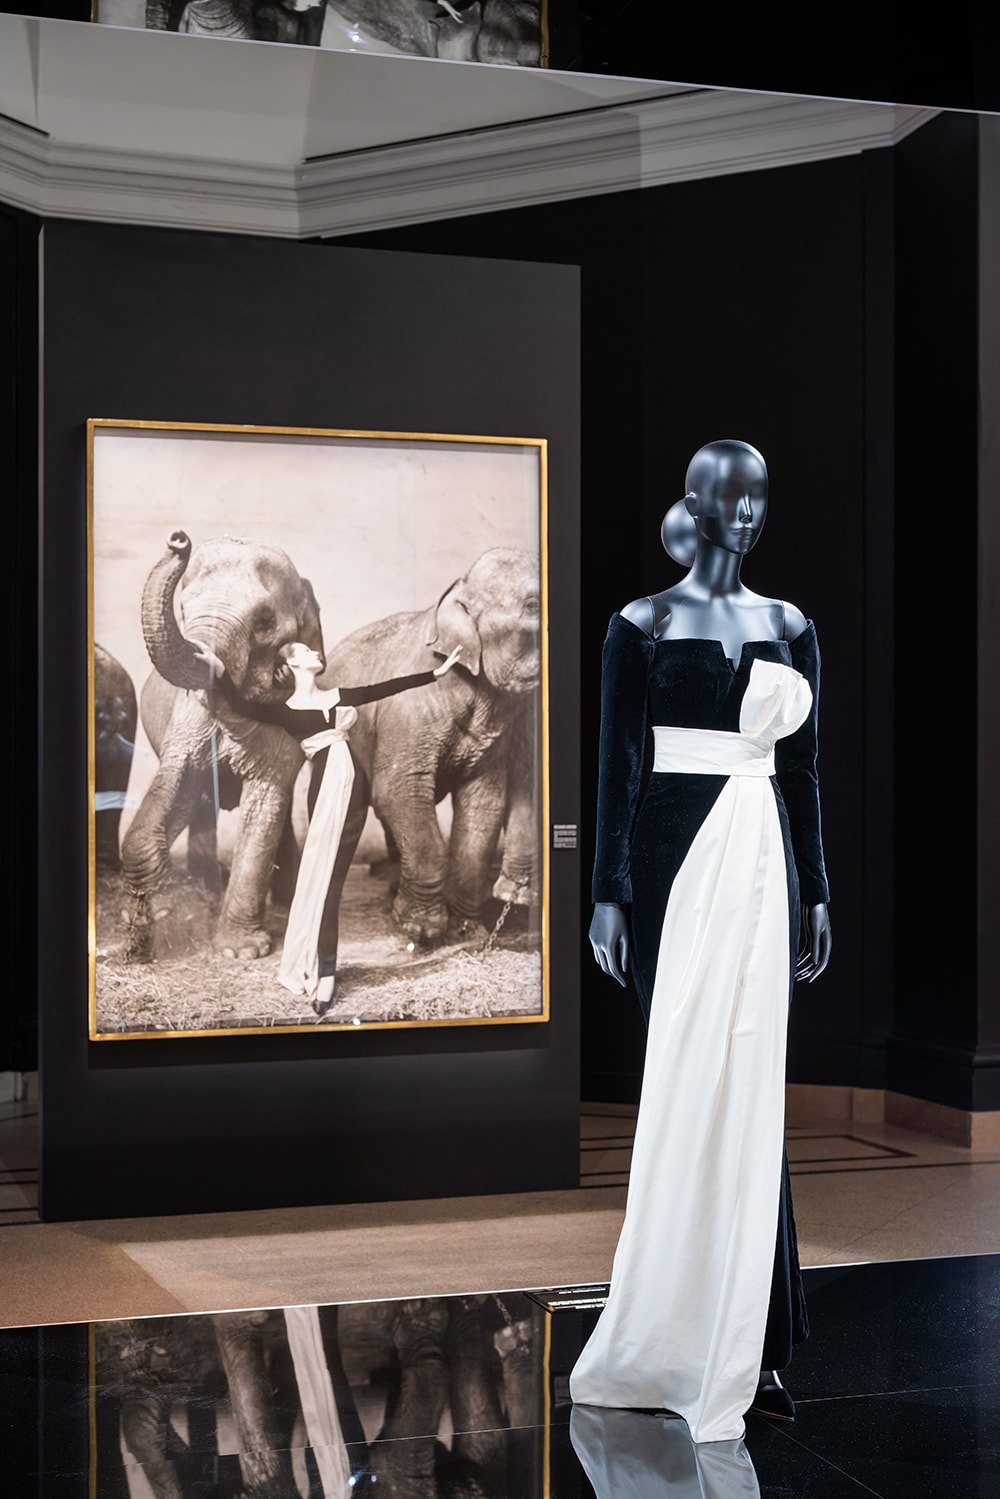 リチャード・アヴェドンがハーパーズバザー誌のために撮影した写真でモデルが着用したドレス。象と一緒の写真は大いに話題を呼んだ。